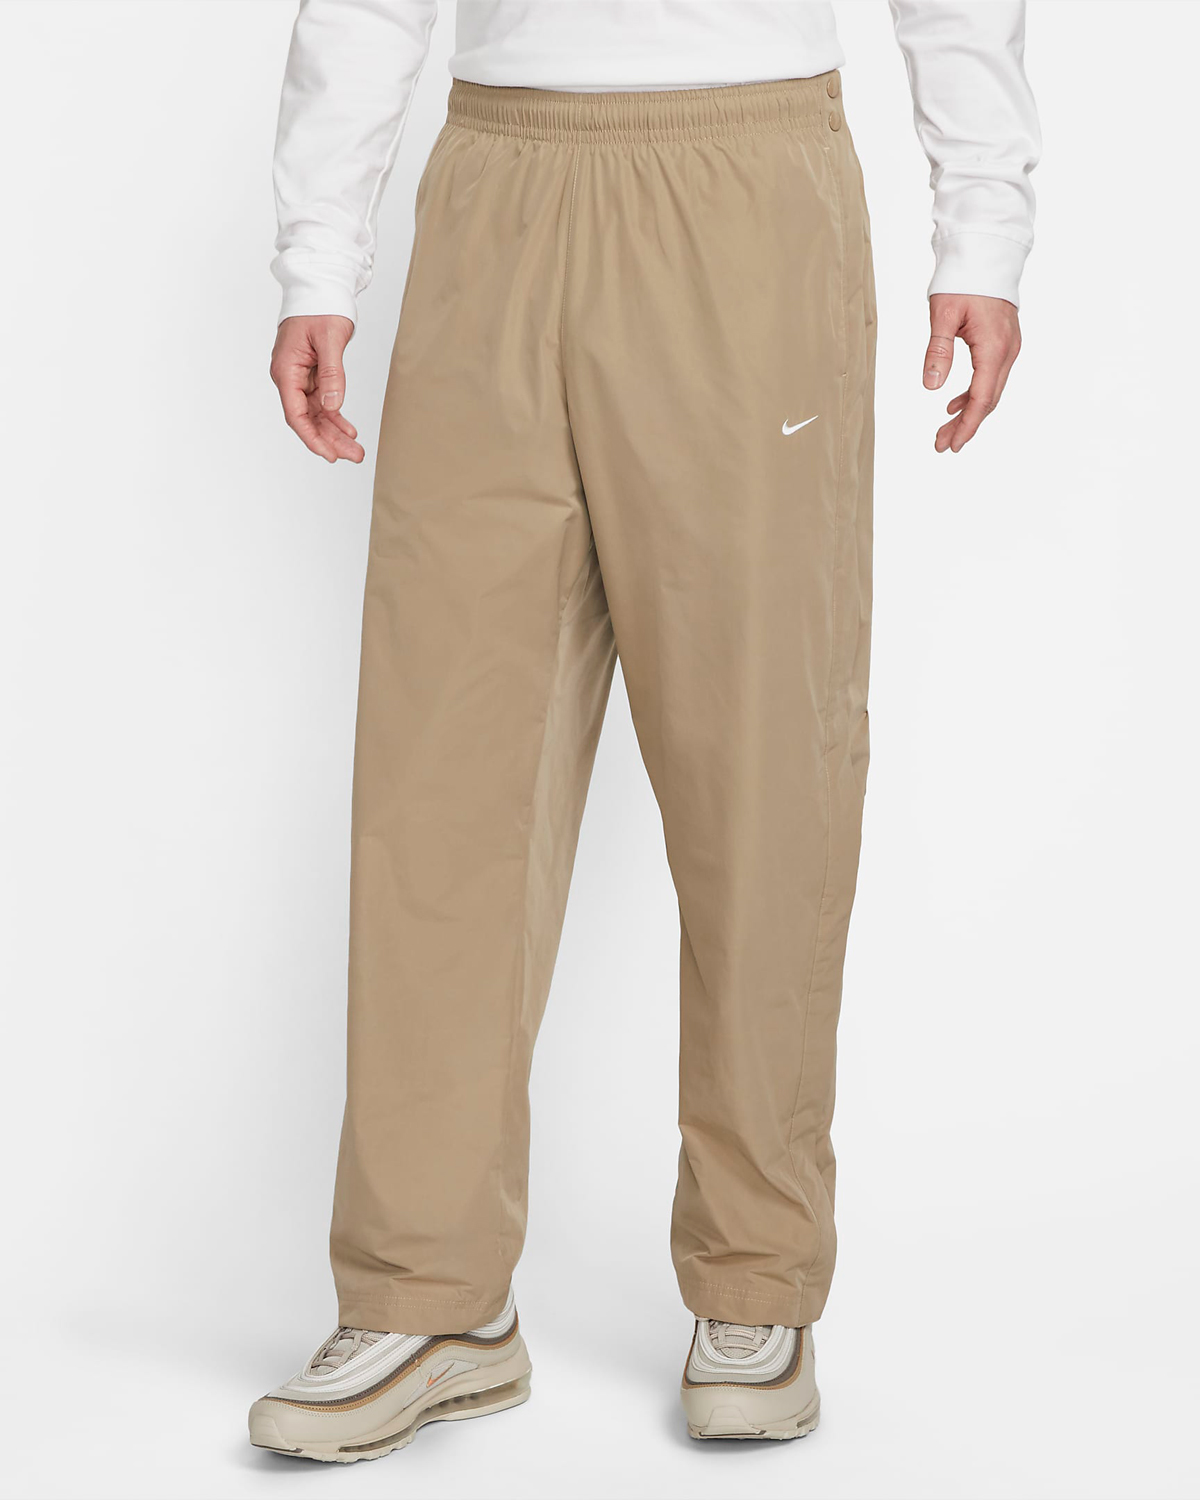 Nike-Authentics-Tear-Away-Pants-Khaki